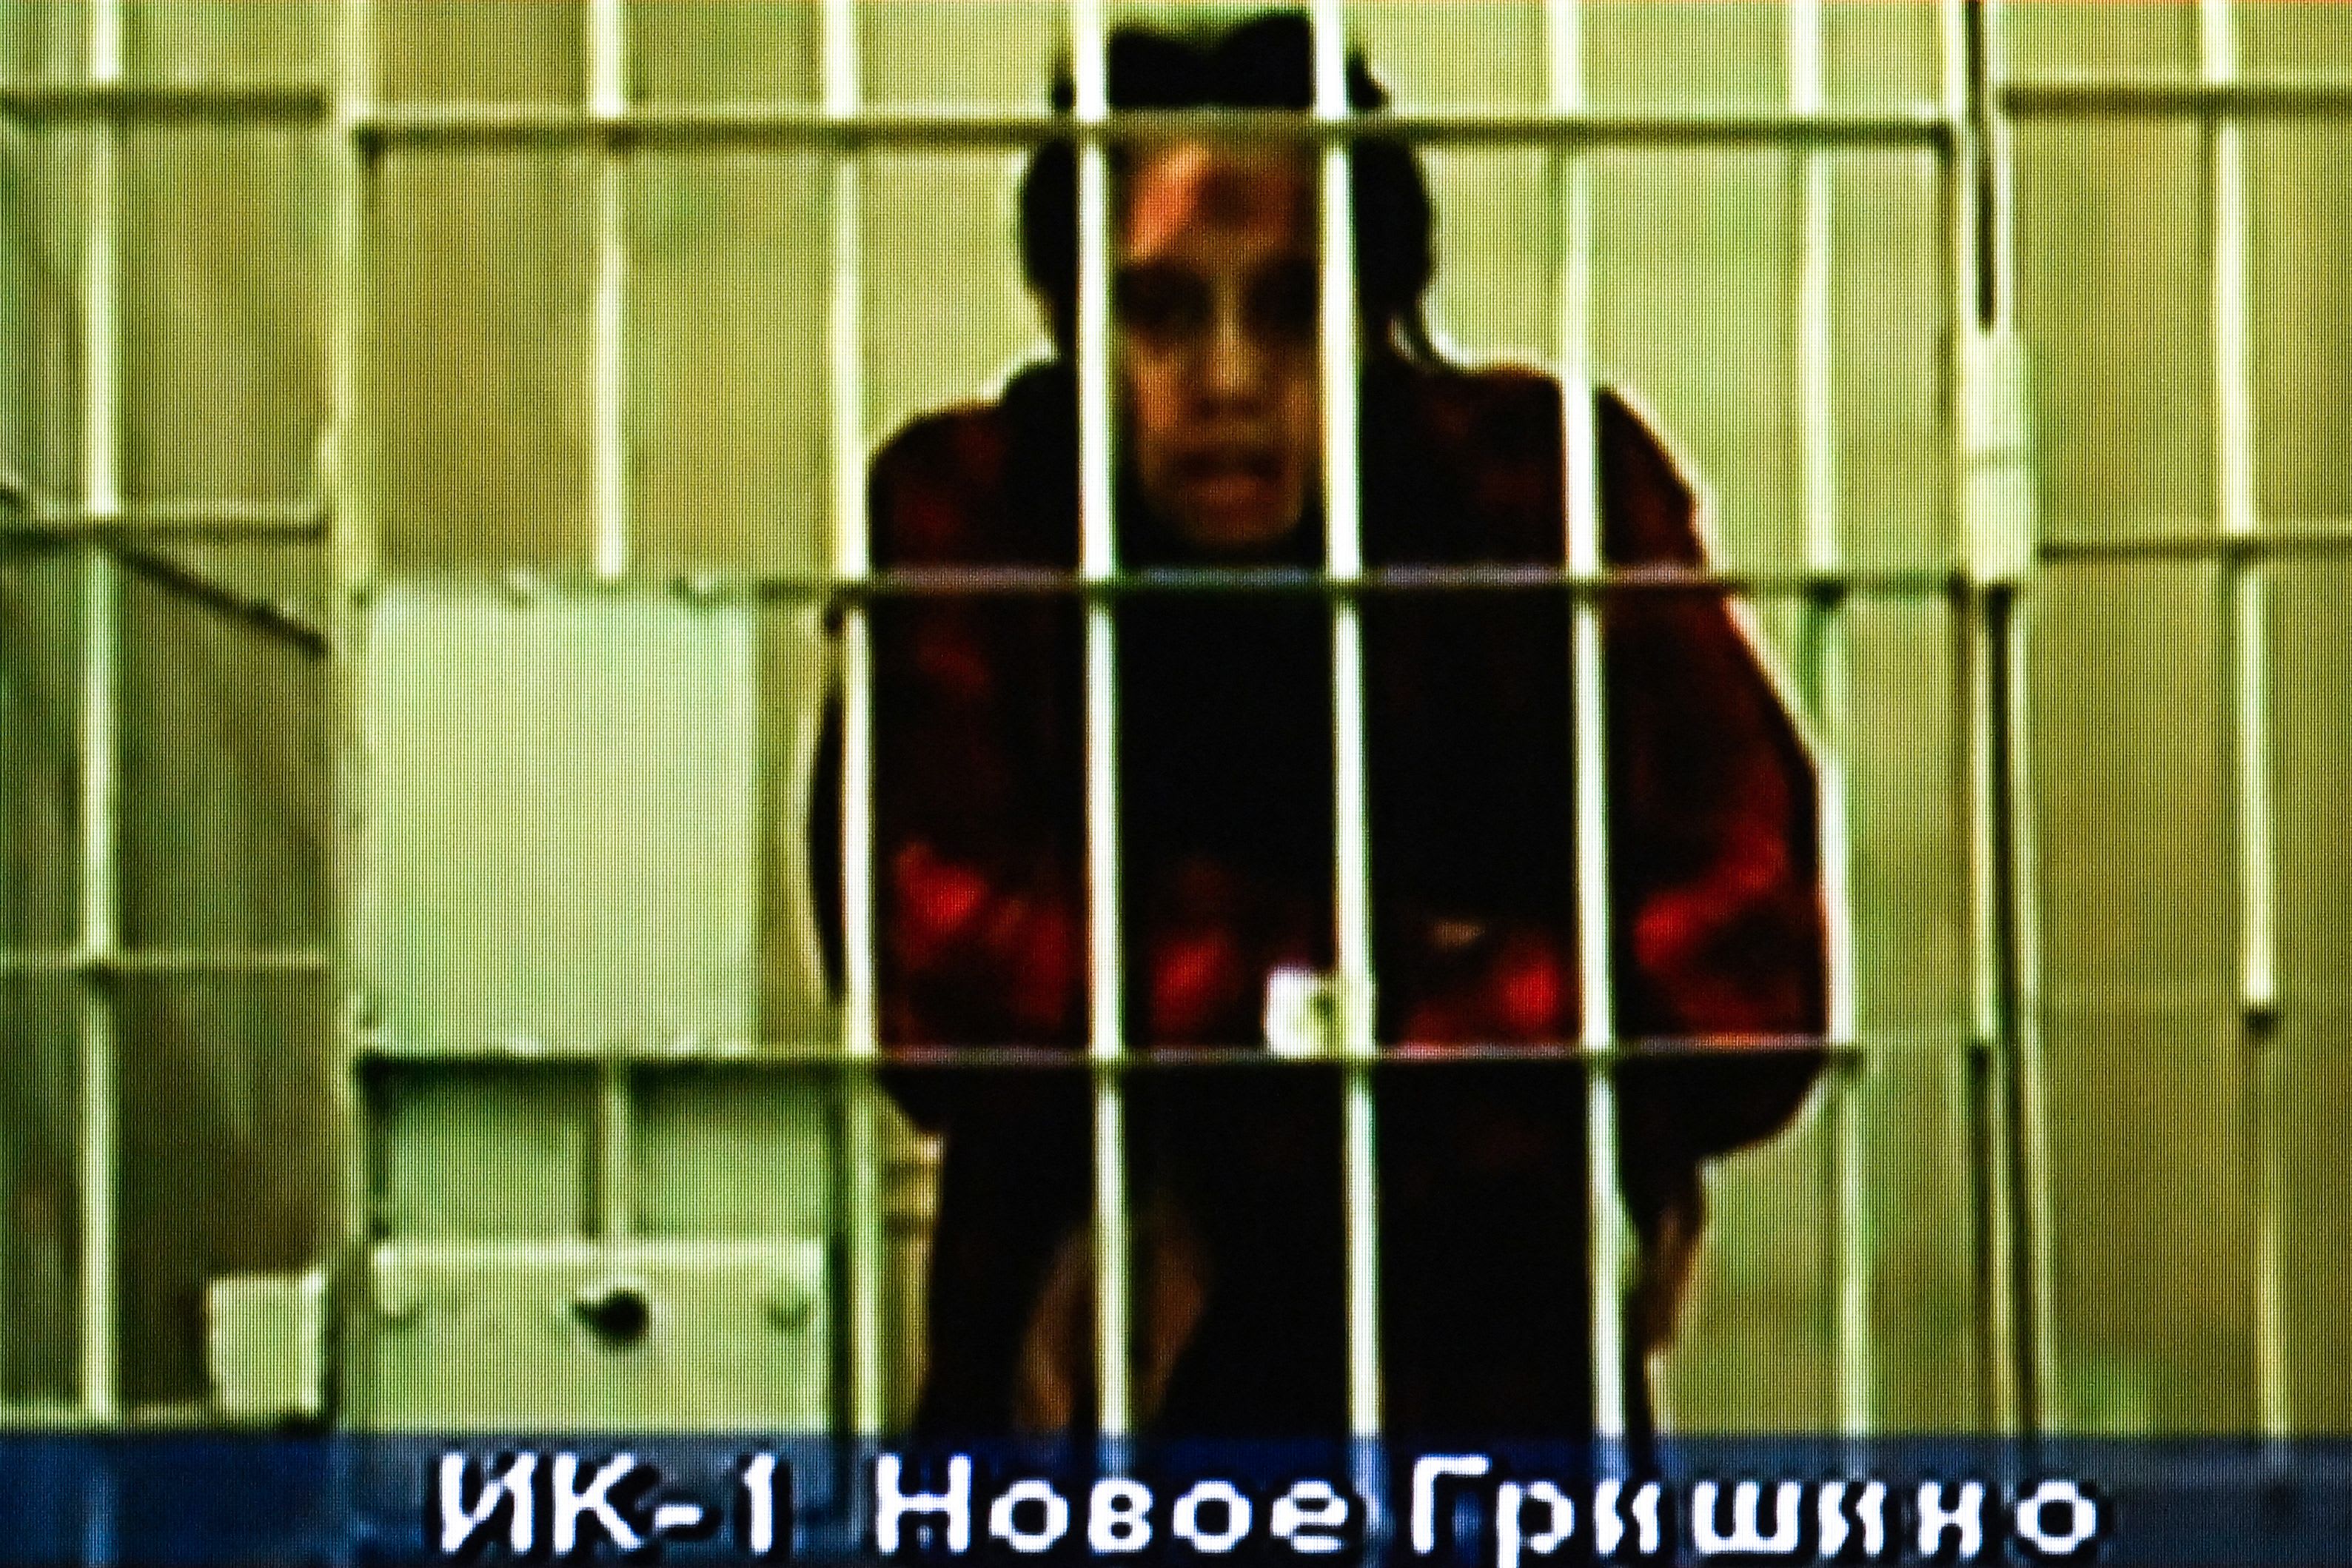 בריטני גריינר בדיון הערעור על מאסרה ברוסיה